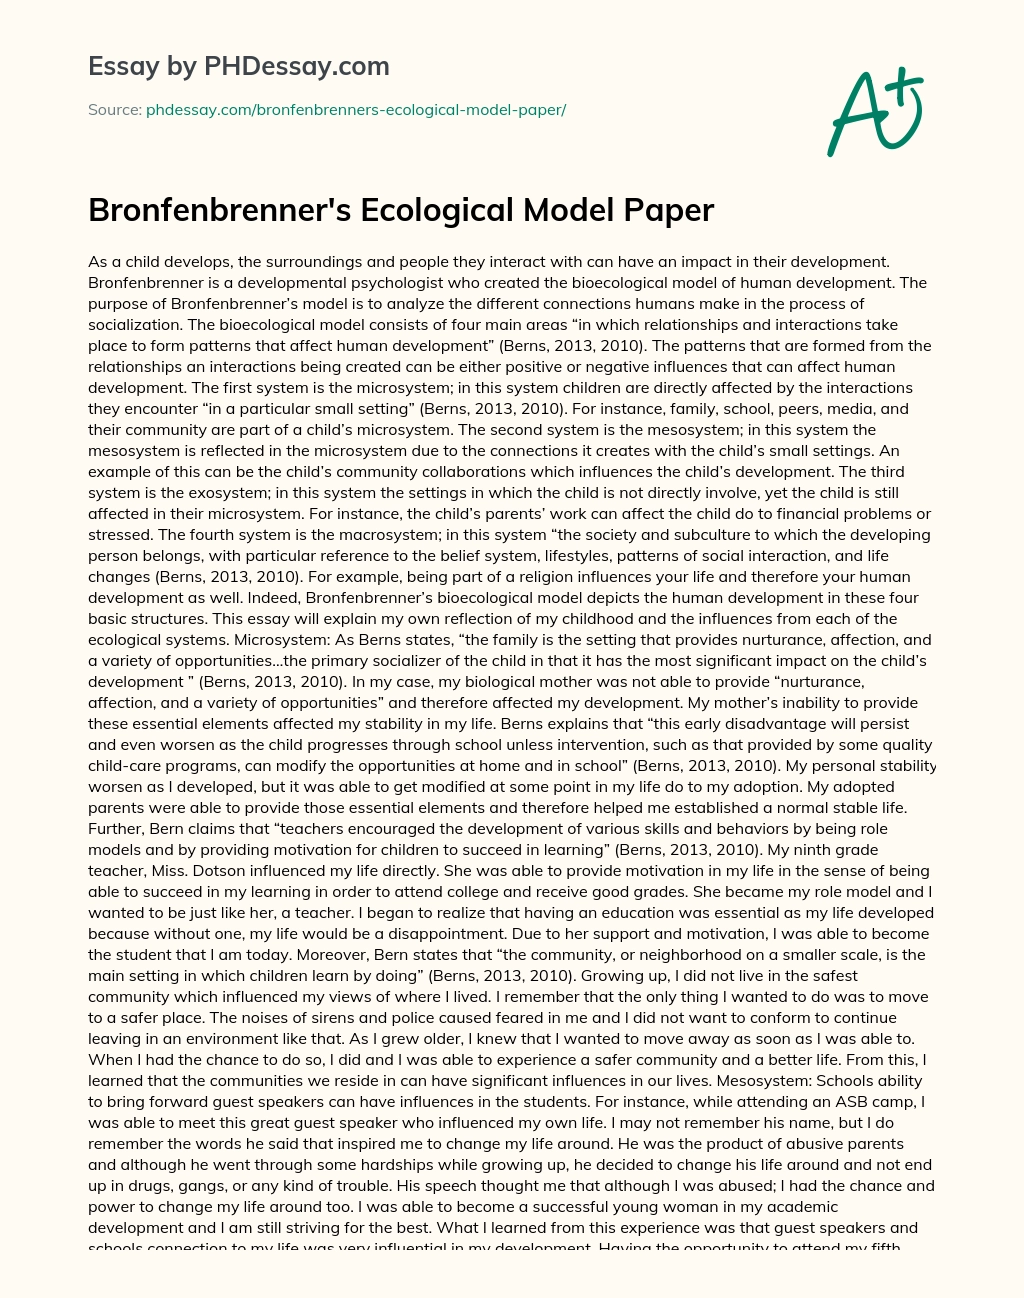 Bronfenbrenner’s Ecological Model Paper essay